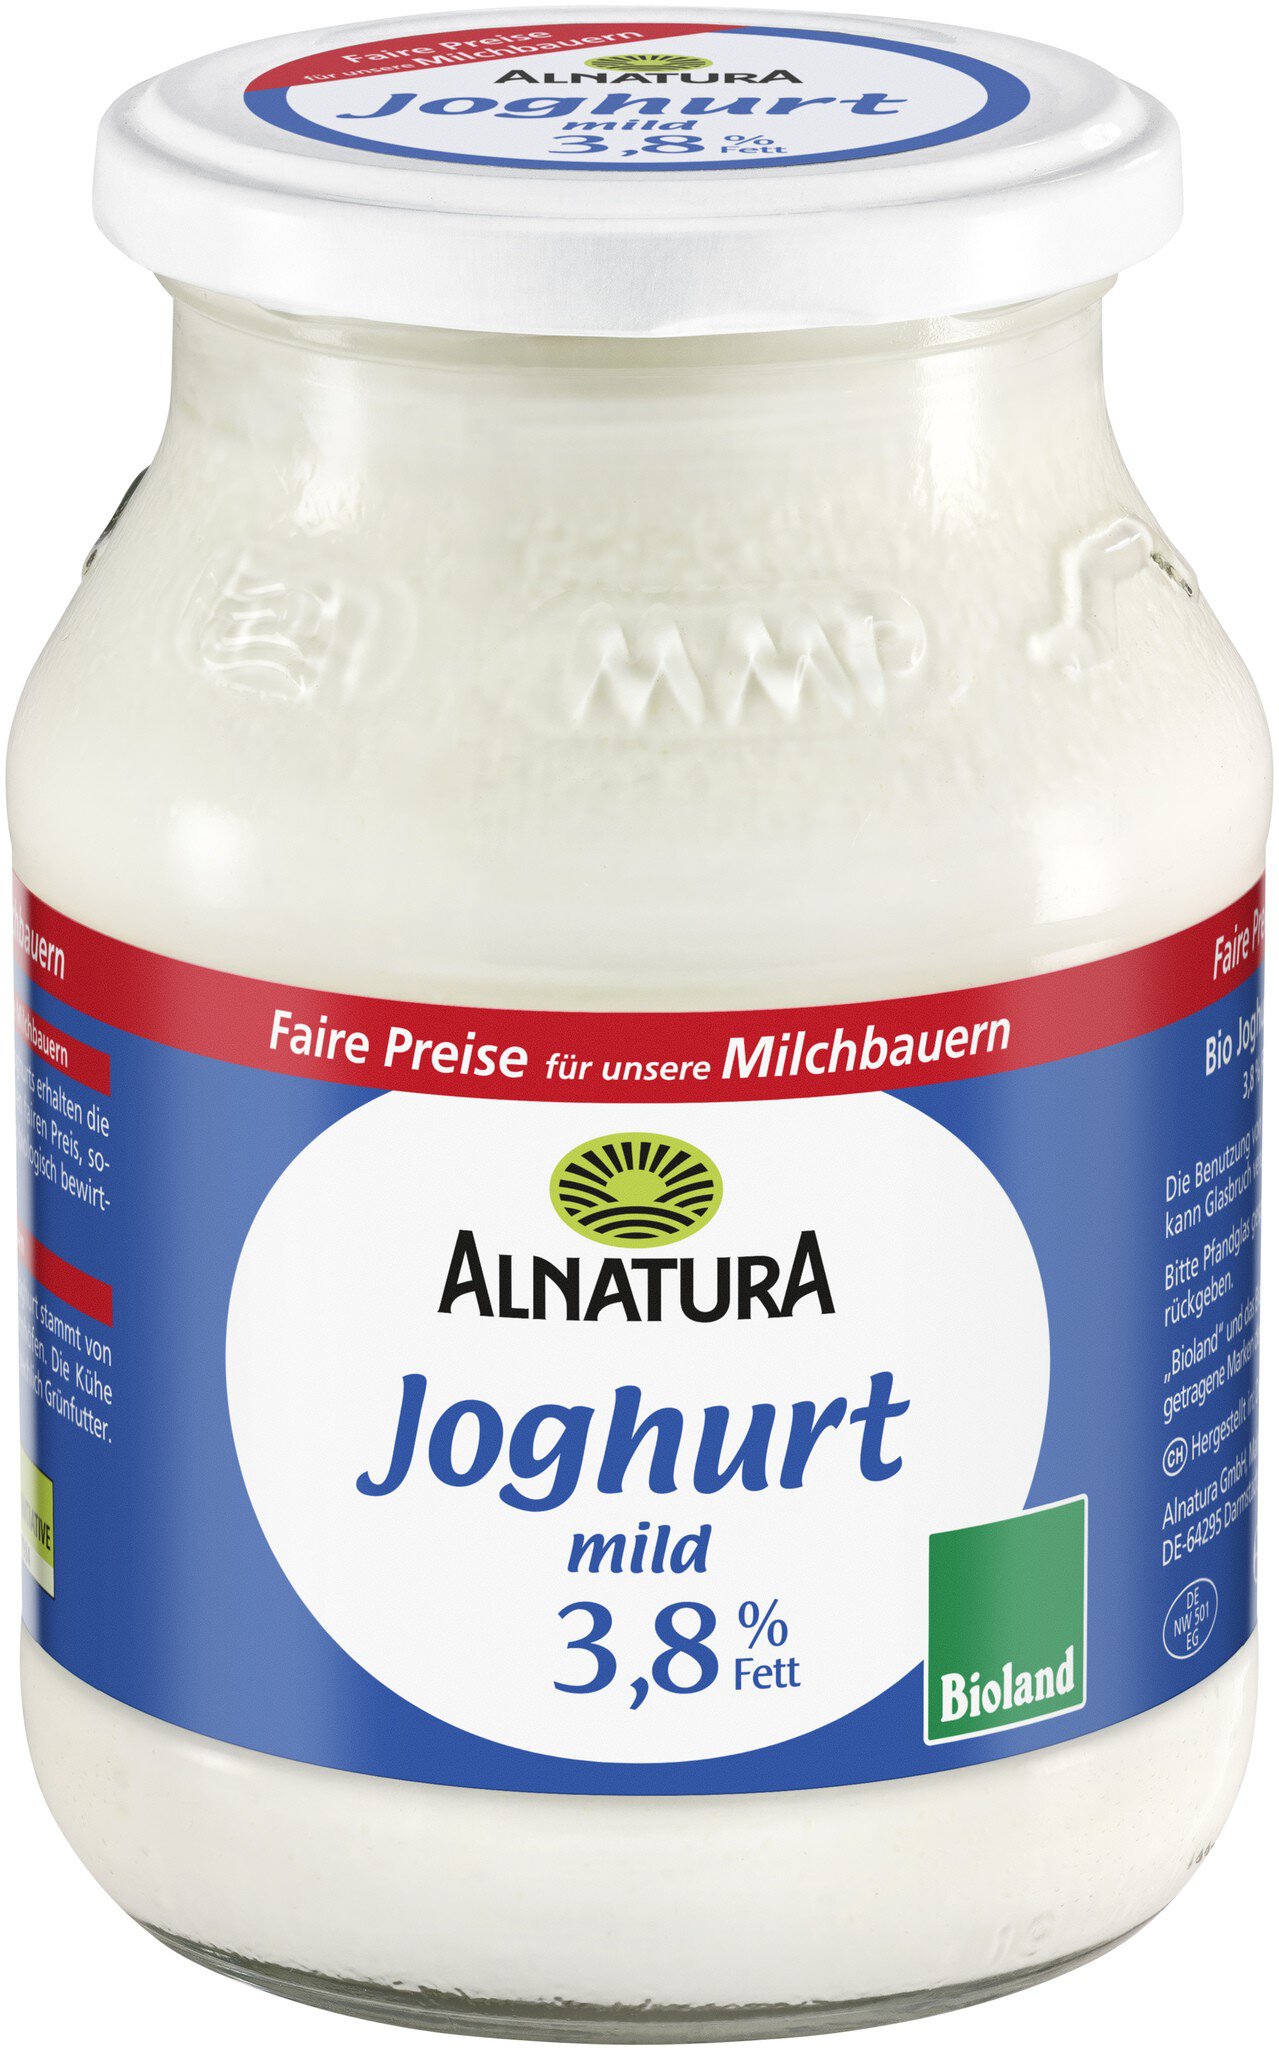 Fett Joghurt 3,8 Bio-Qualität (500 g) von % Alnatura in mild